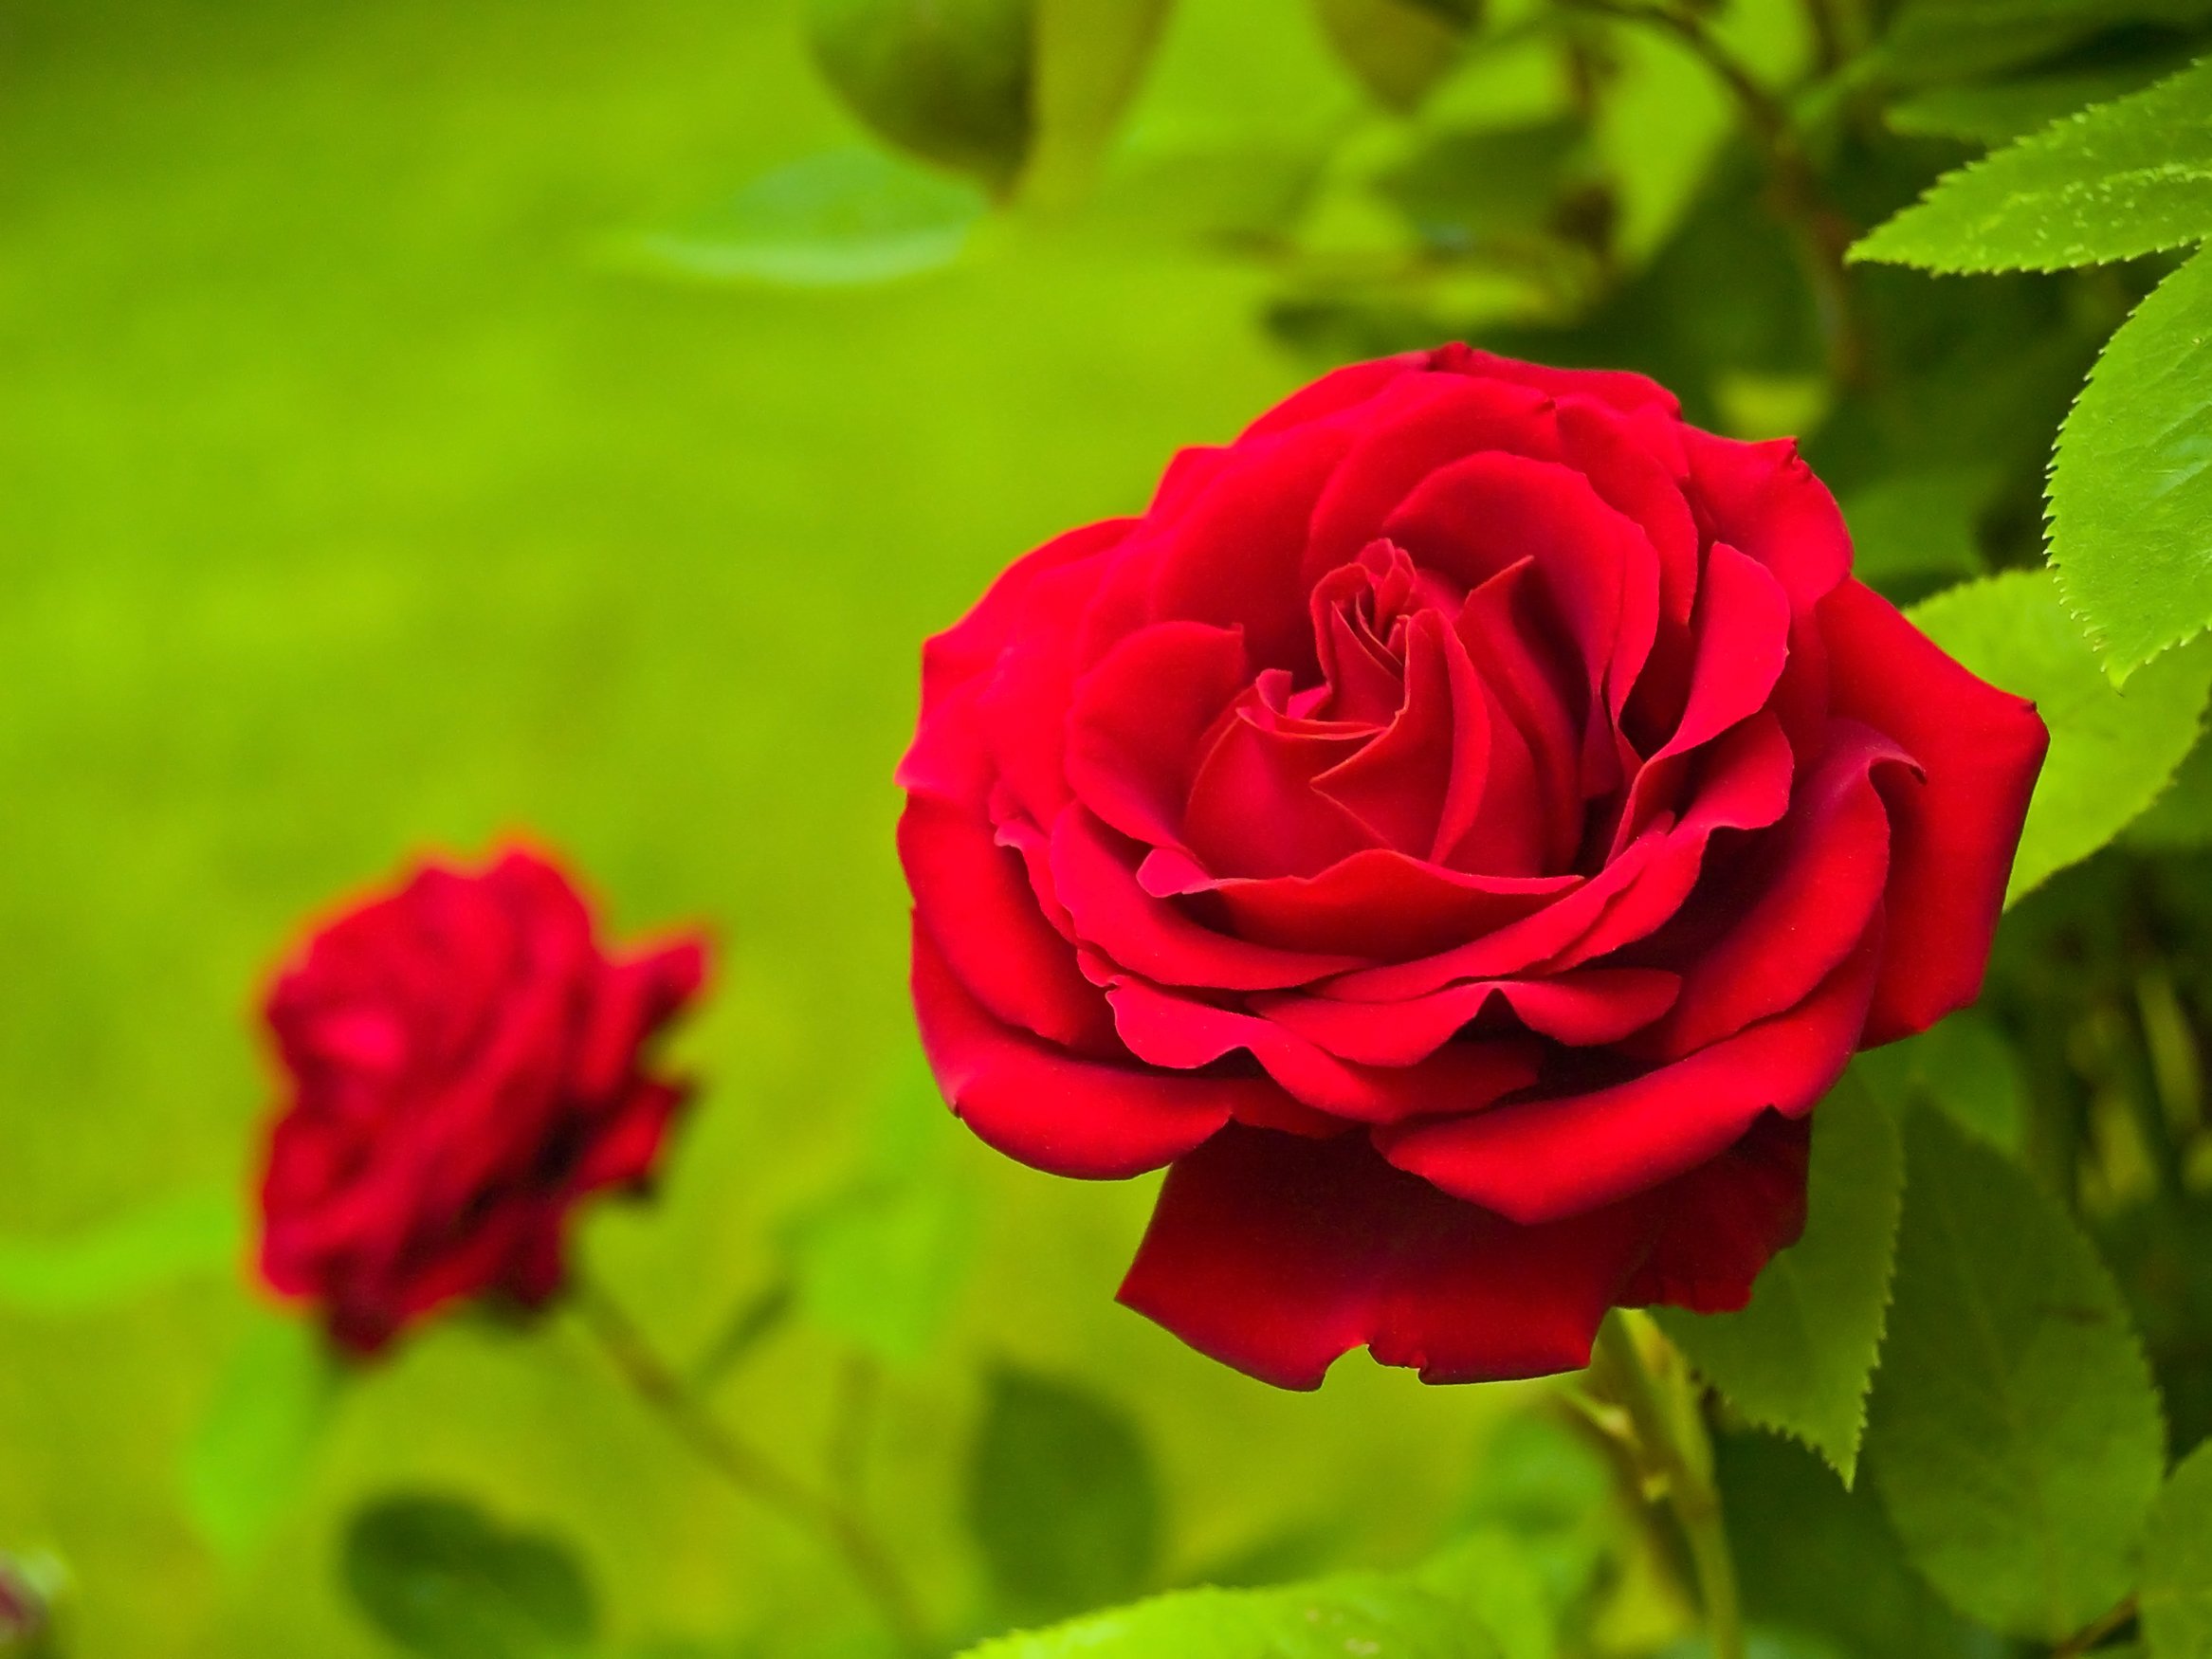 National Flower of Czech Republic -Rose